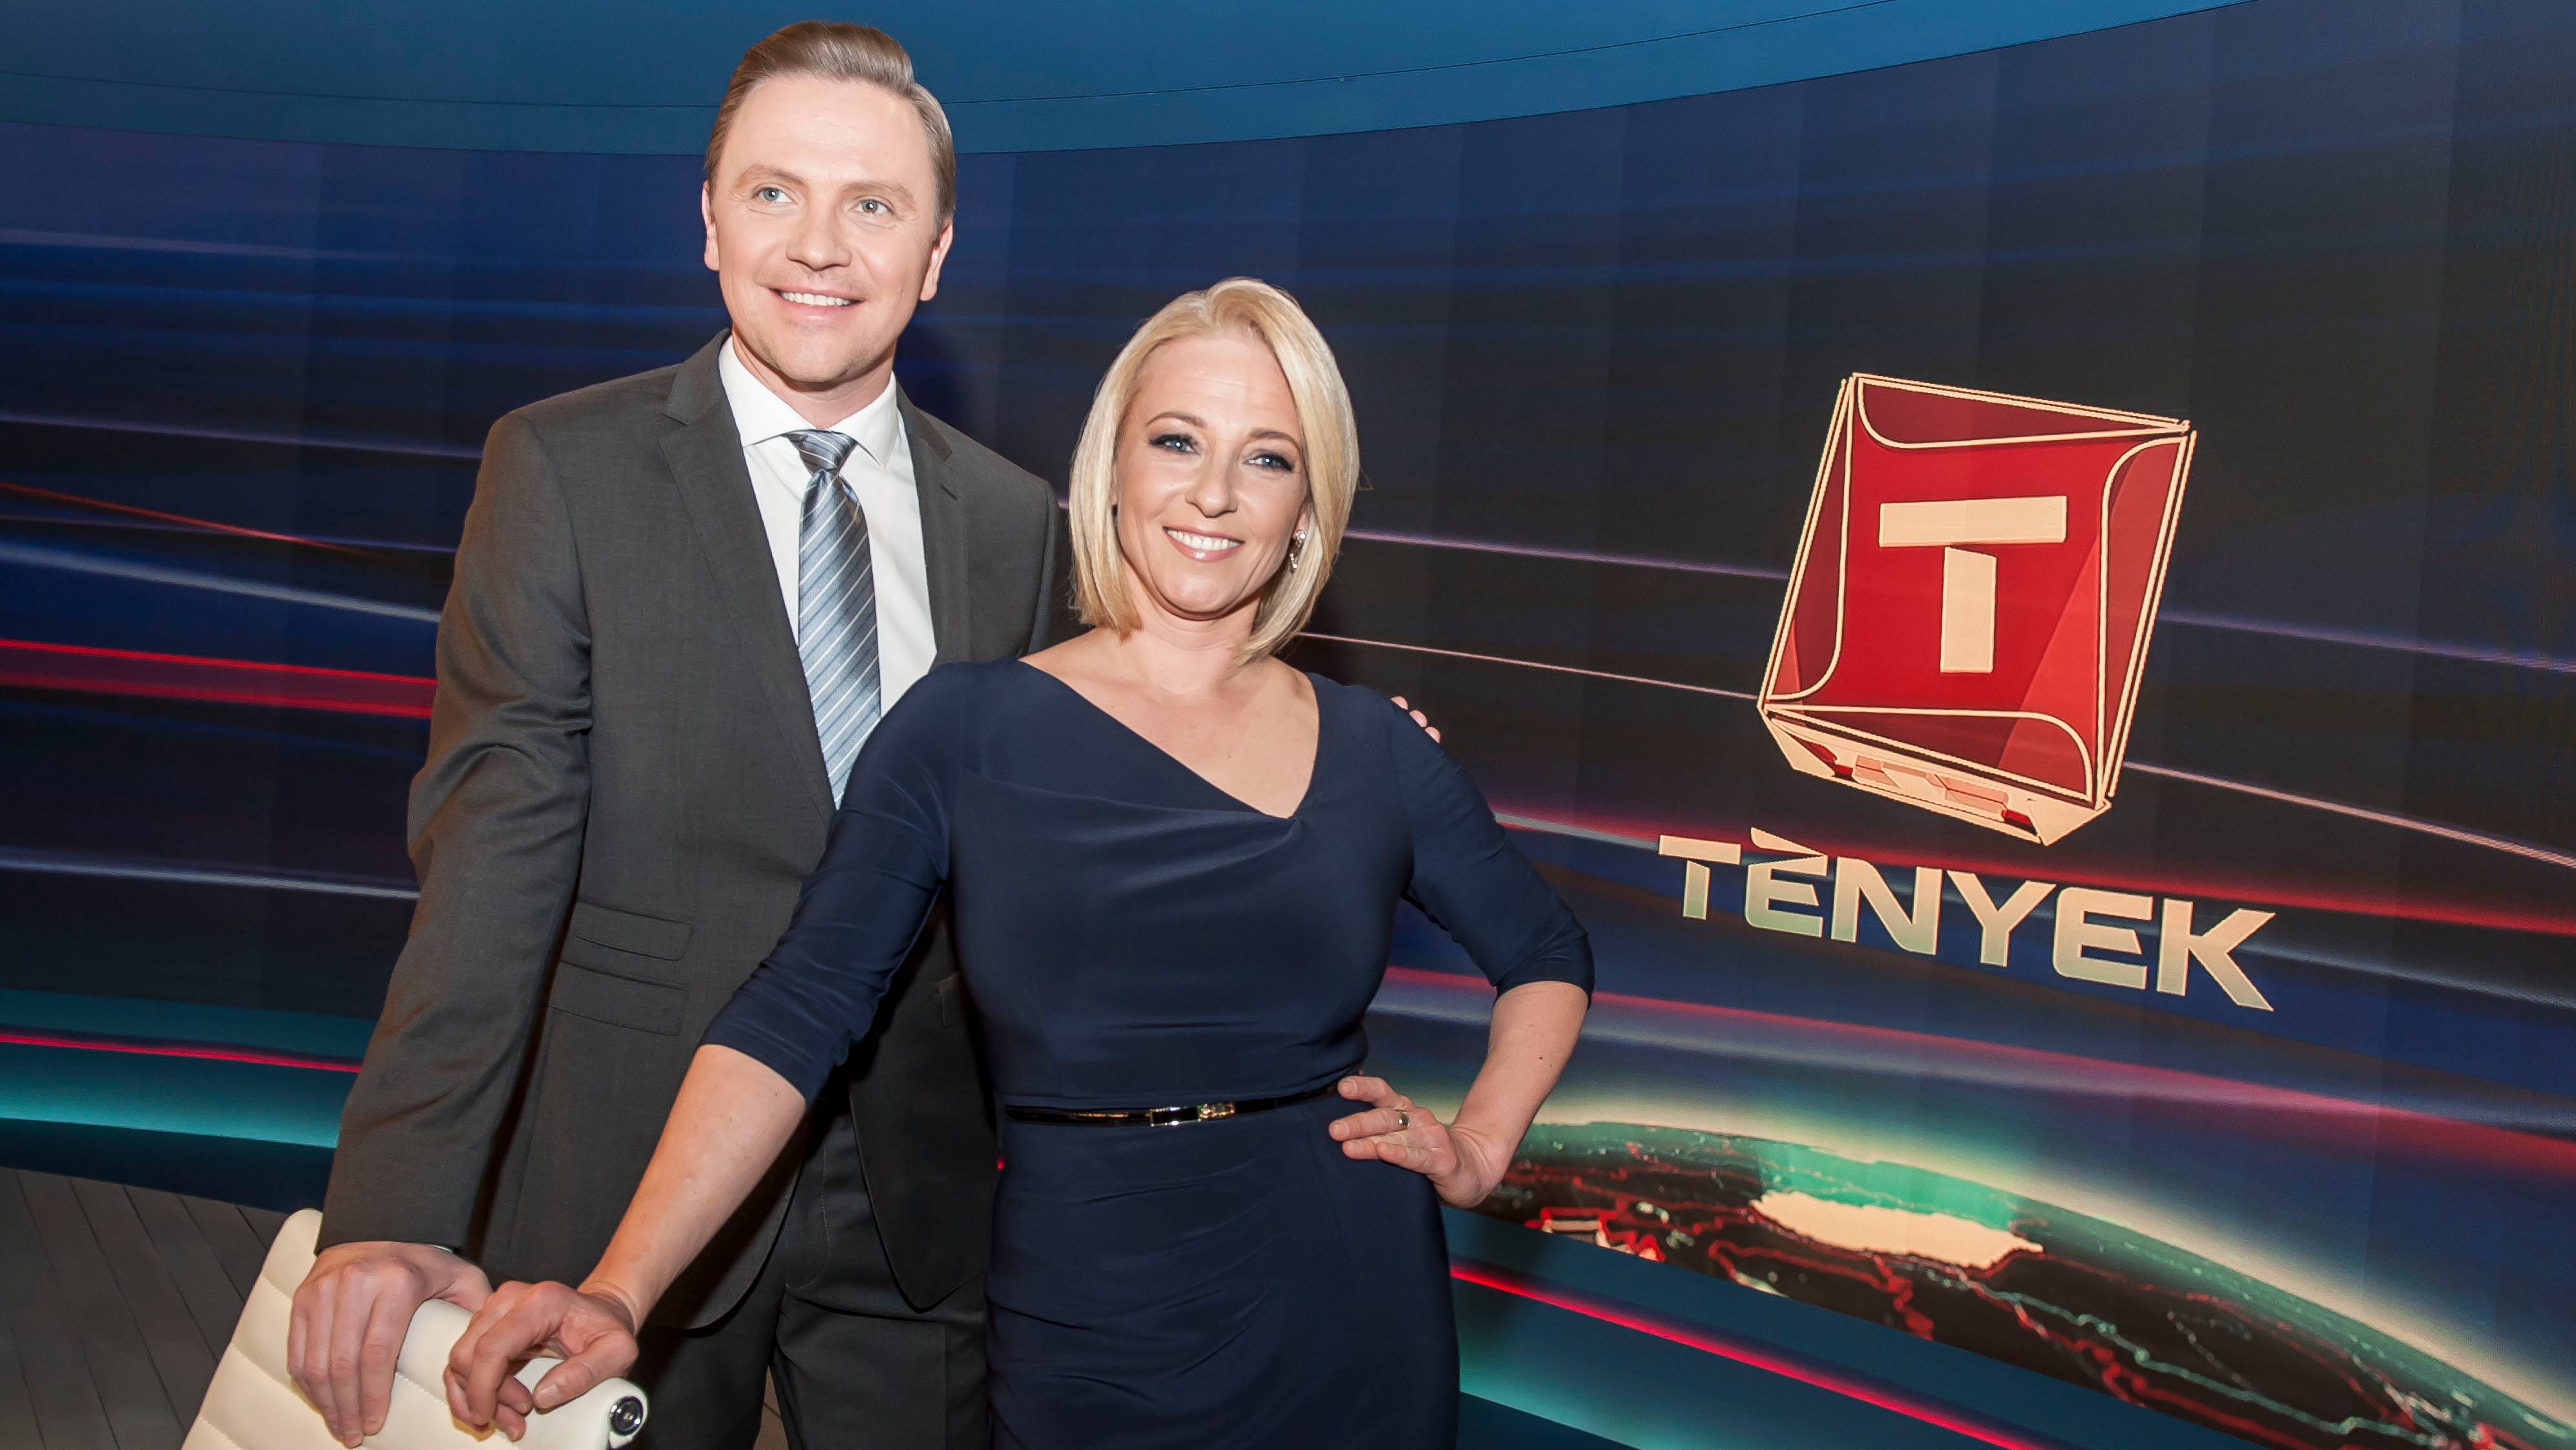 7,4 milliós bírságot kapott a TV2 a Tények miatt